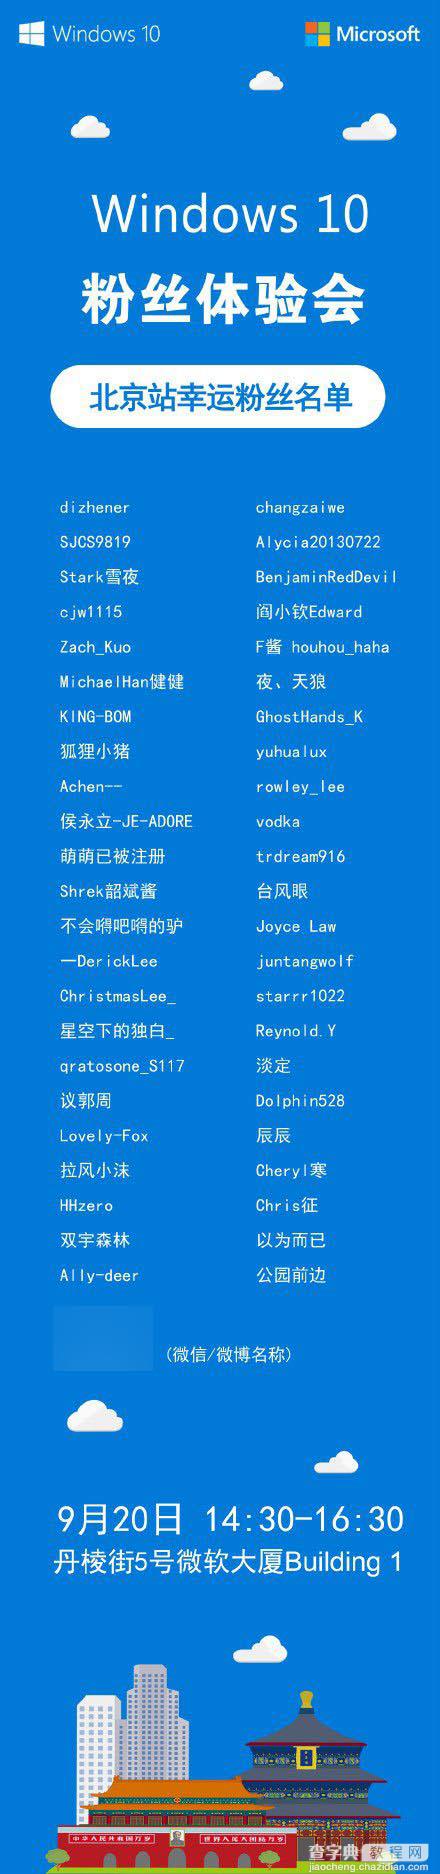 9月20日微软中国Win10粉丝体验会北京站粉丝名单揭晓1